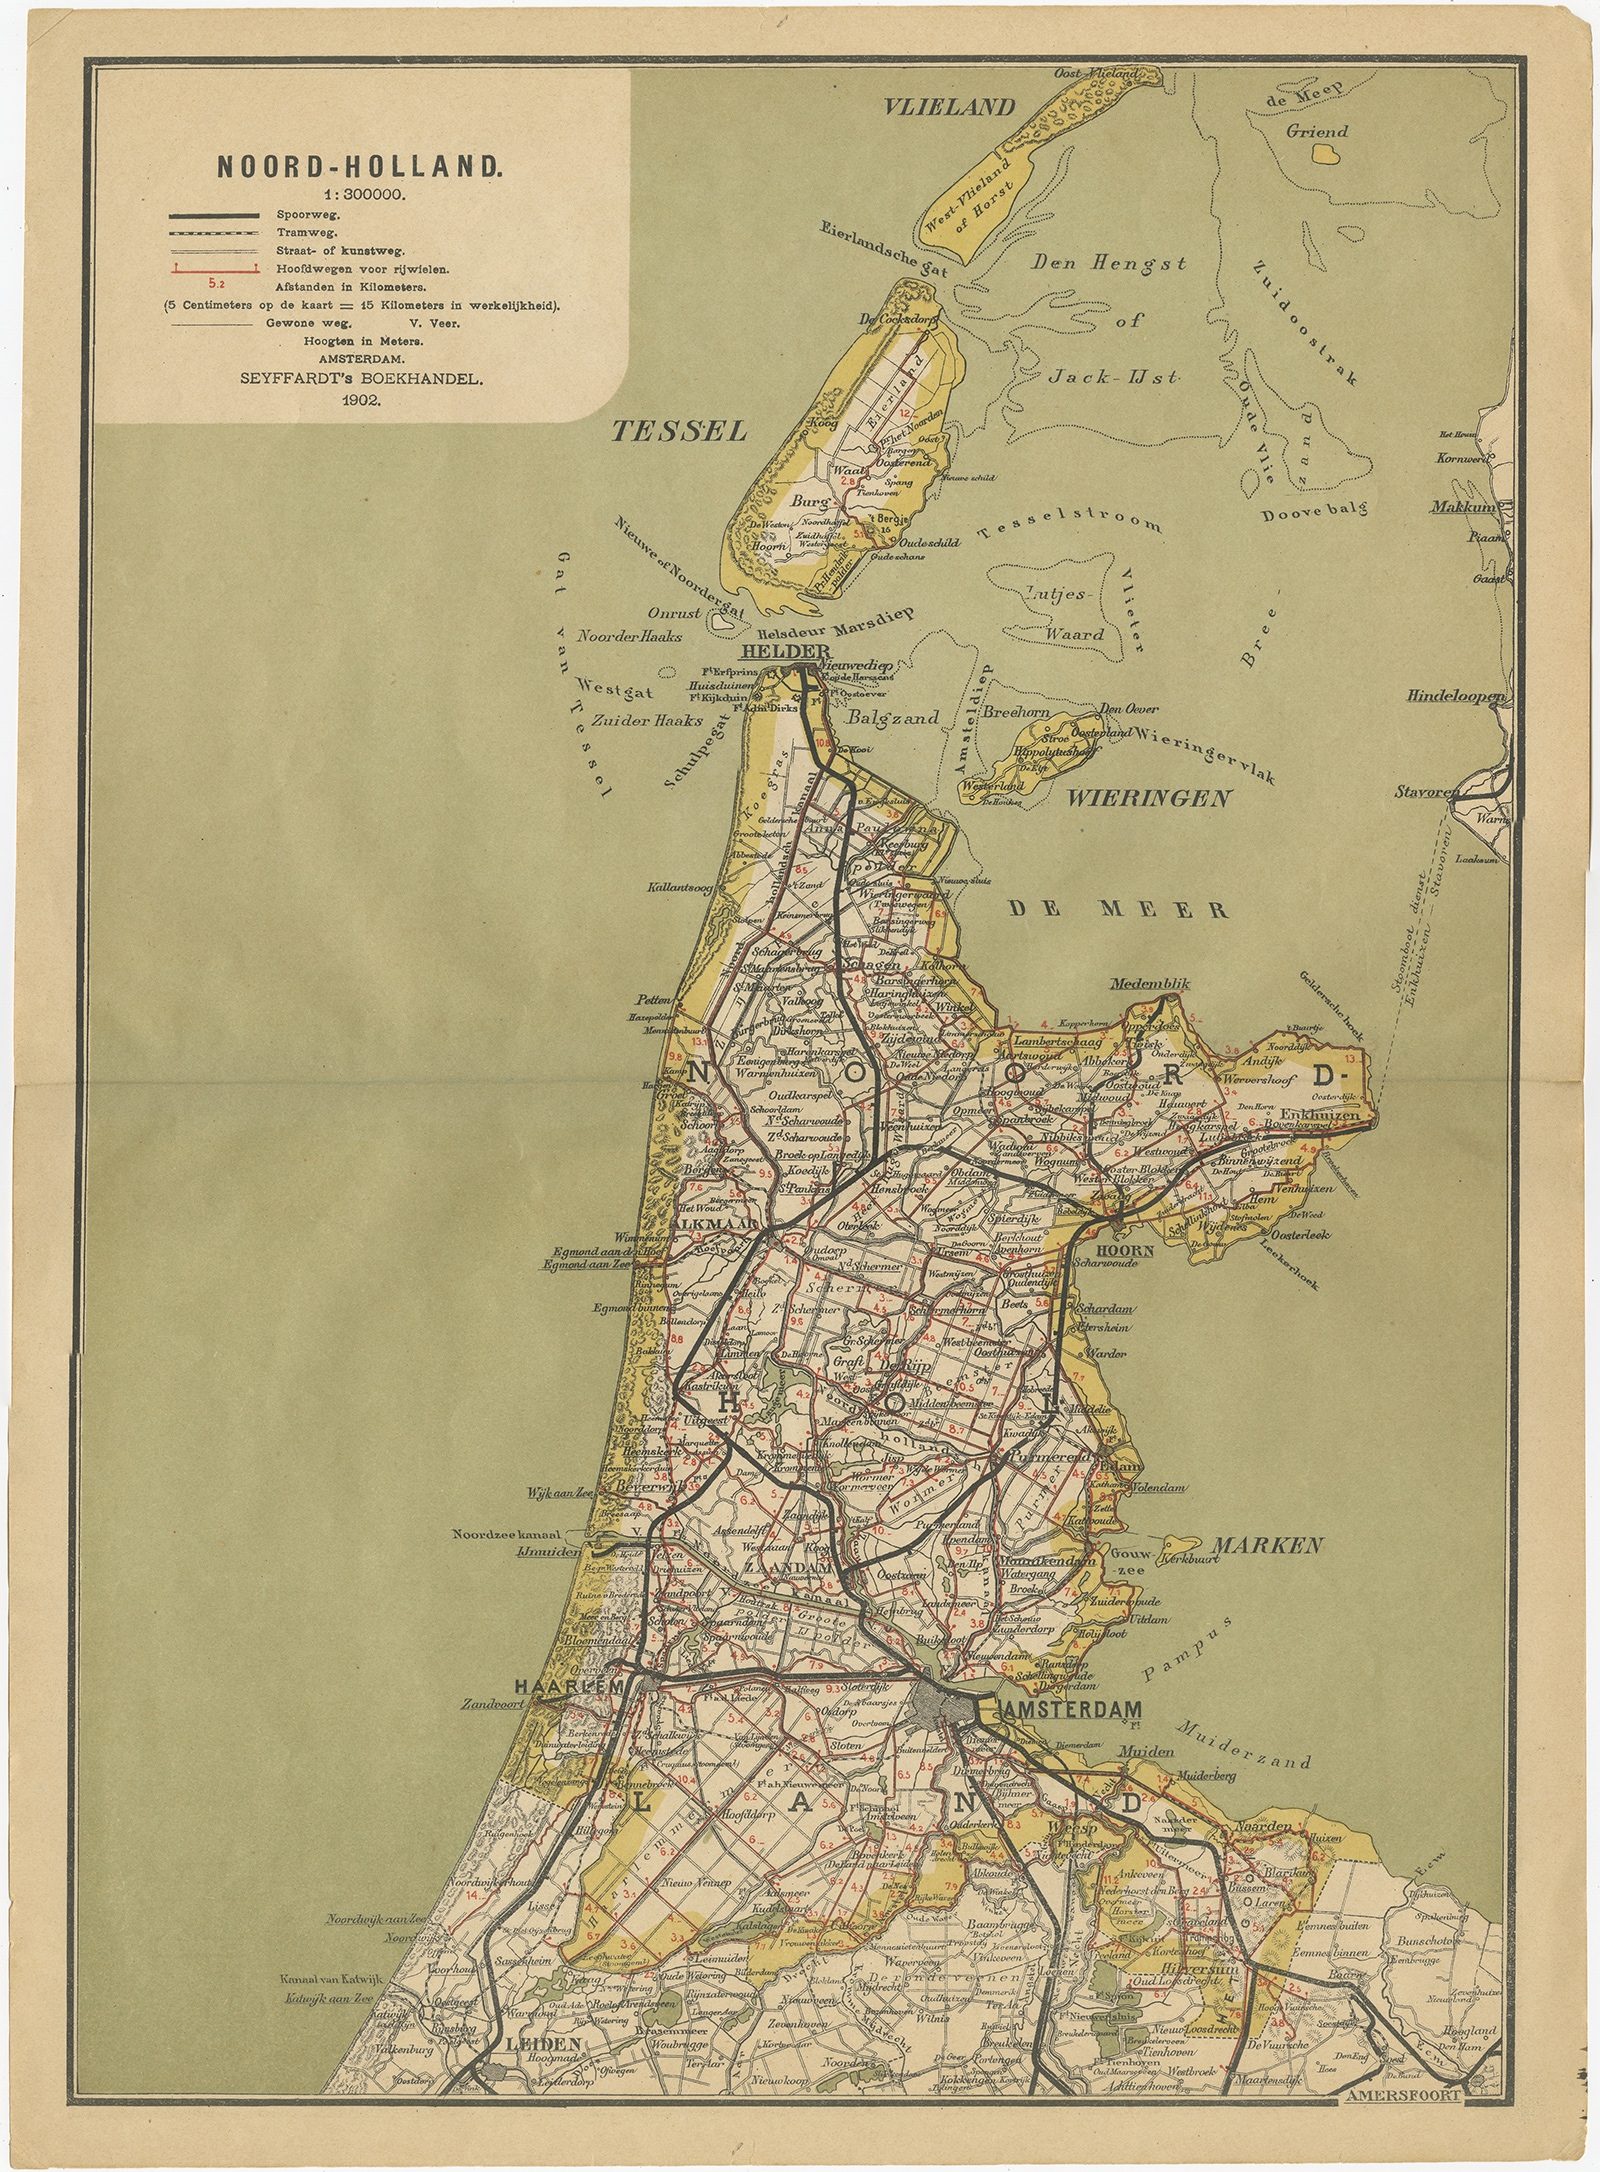 Antique Map Of Noord Holland By Seyffardt 1902